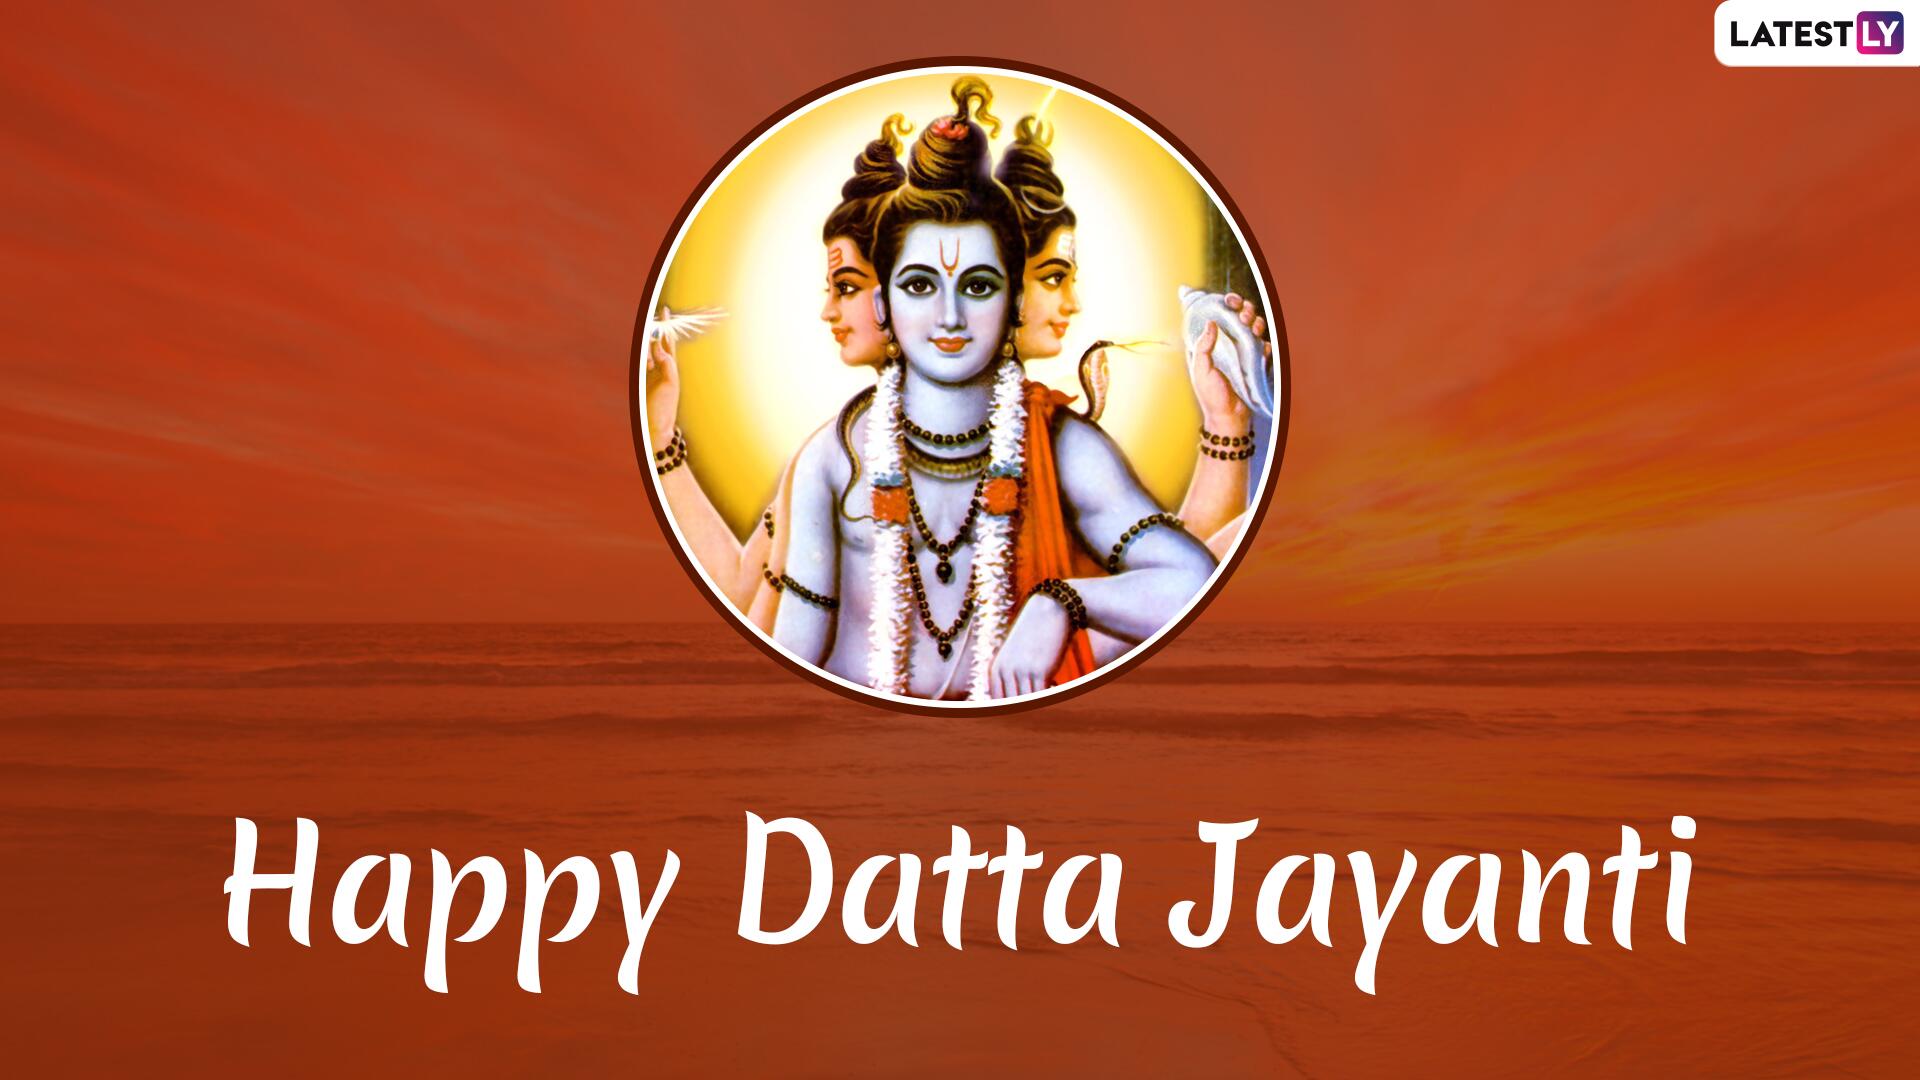 Datta Jayanti 2019 Messages - Happy Saraswati Puja 2020 - HD Wallpaper 